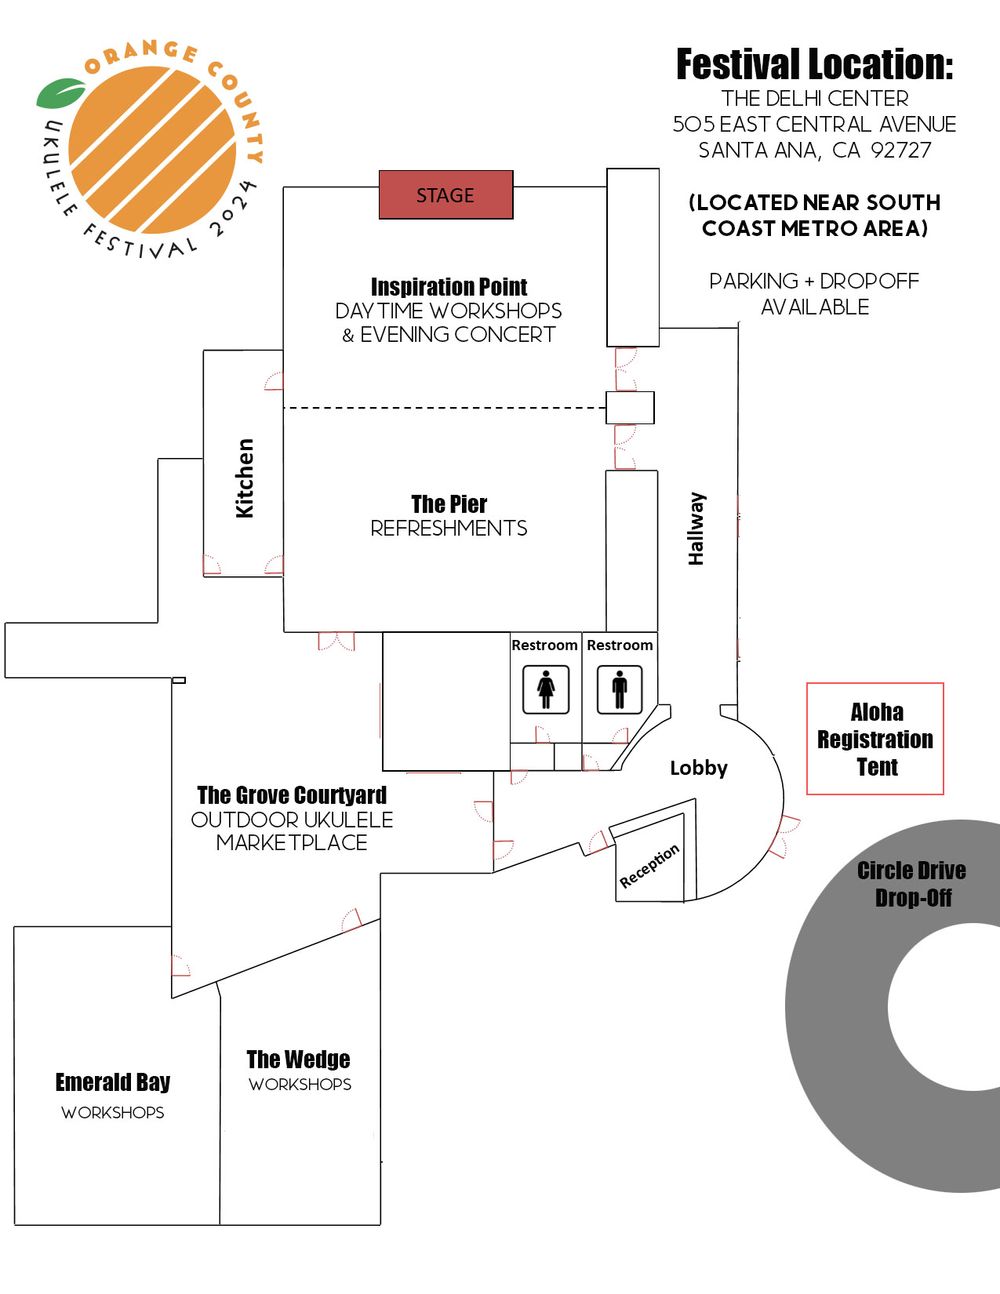 Floor plan of the Delhi Center for OC Uke Fest